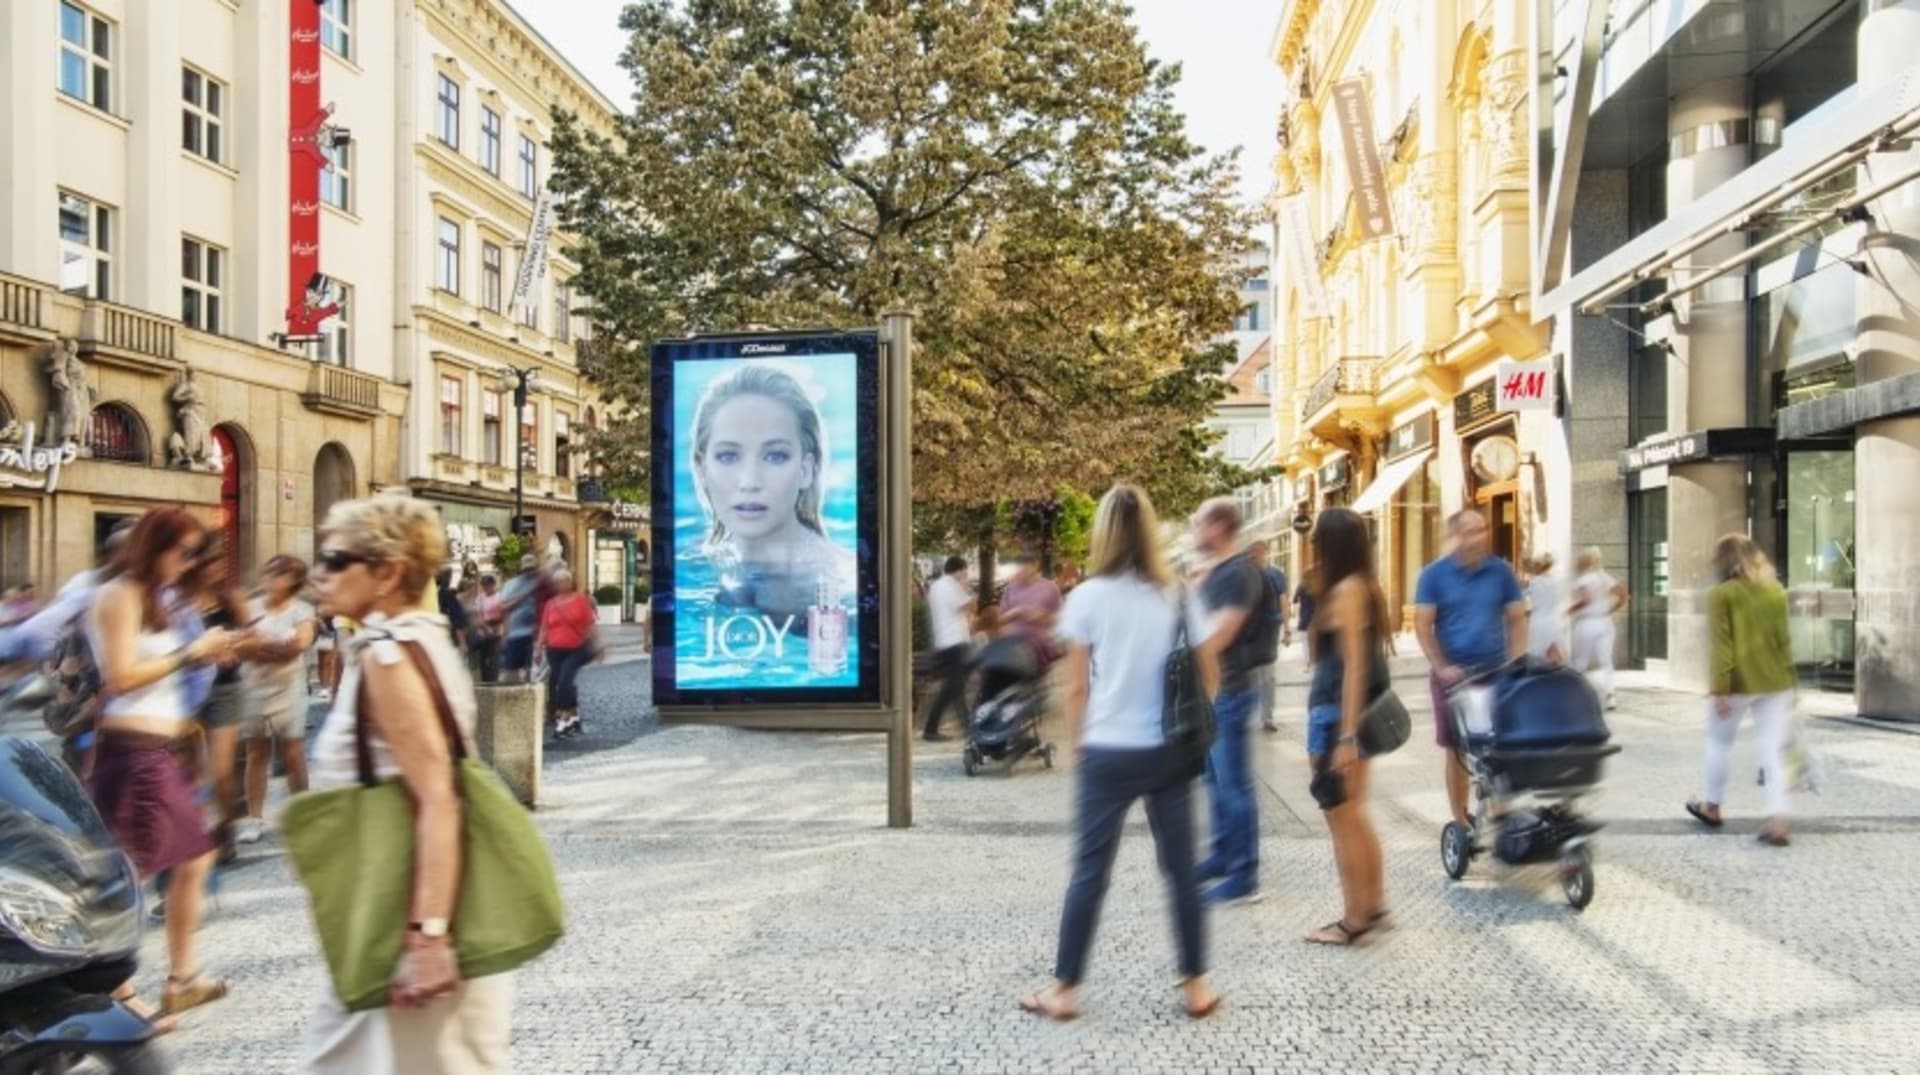 Mezinárodní skupina JCDecaux s Českou republikou zahájila arbitrážní spor kvůli ukončení pronájmu reklamních ploch ze strany pražského dopravního podniku.